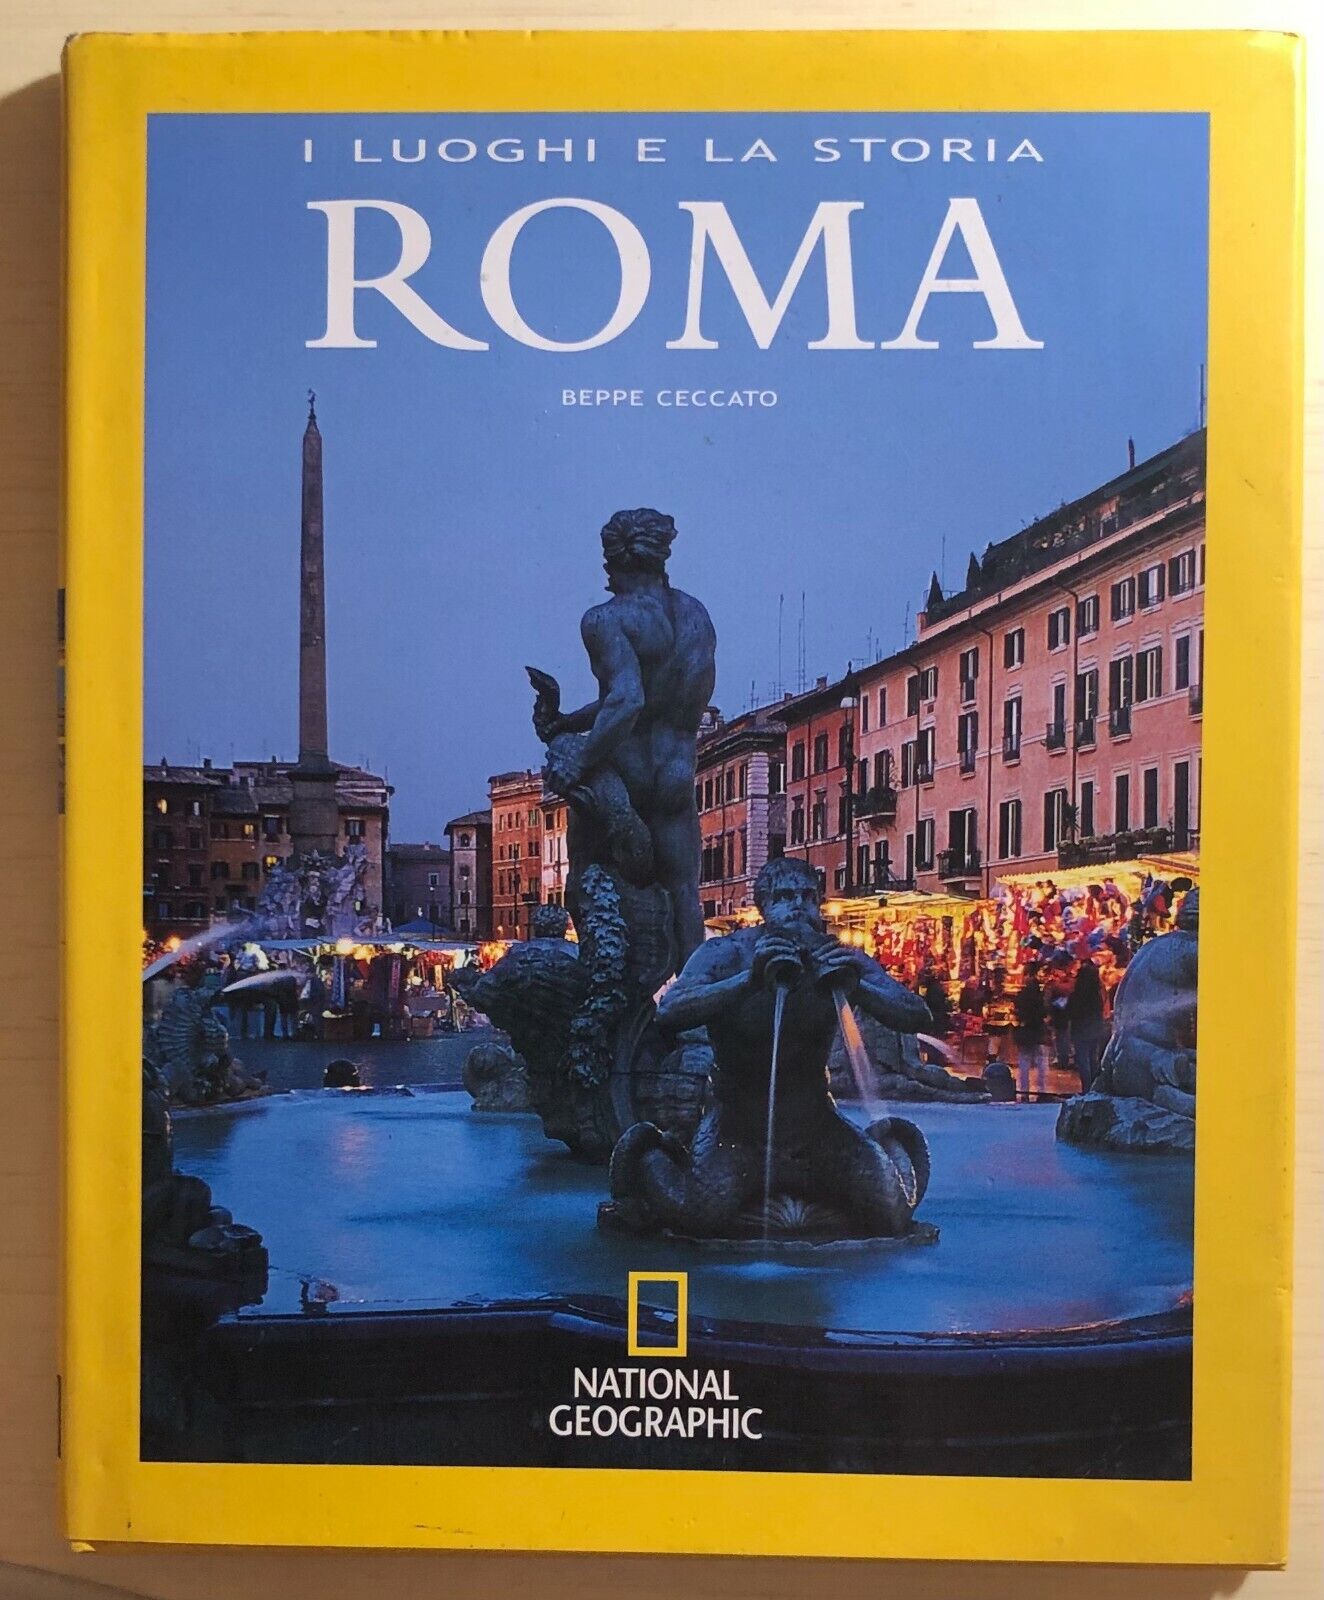 Roma i luoghi e la storia di Beppe Ceccato, 2007, National Geographic